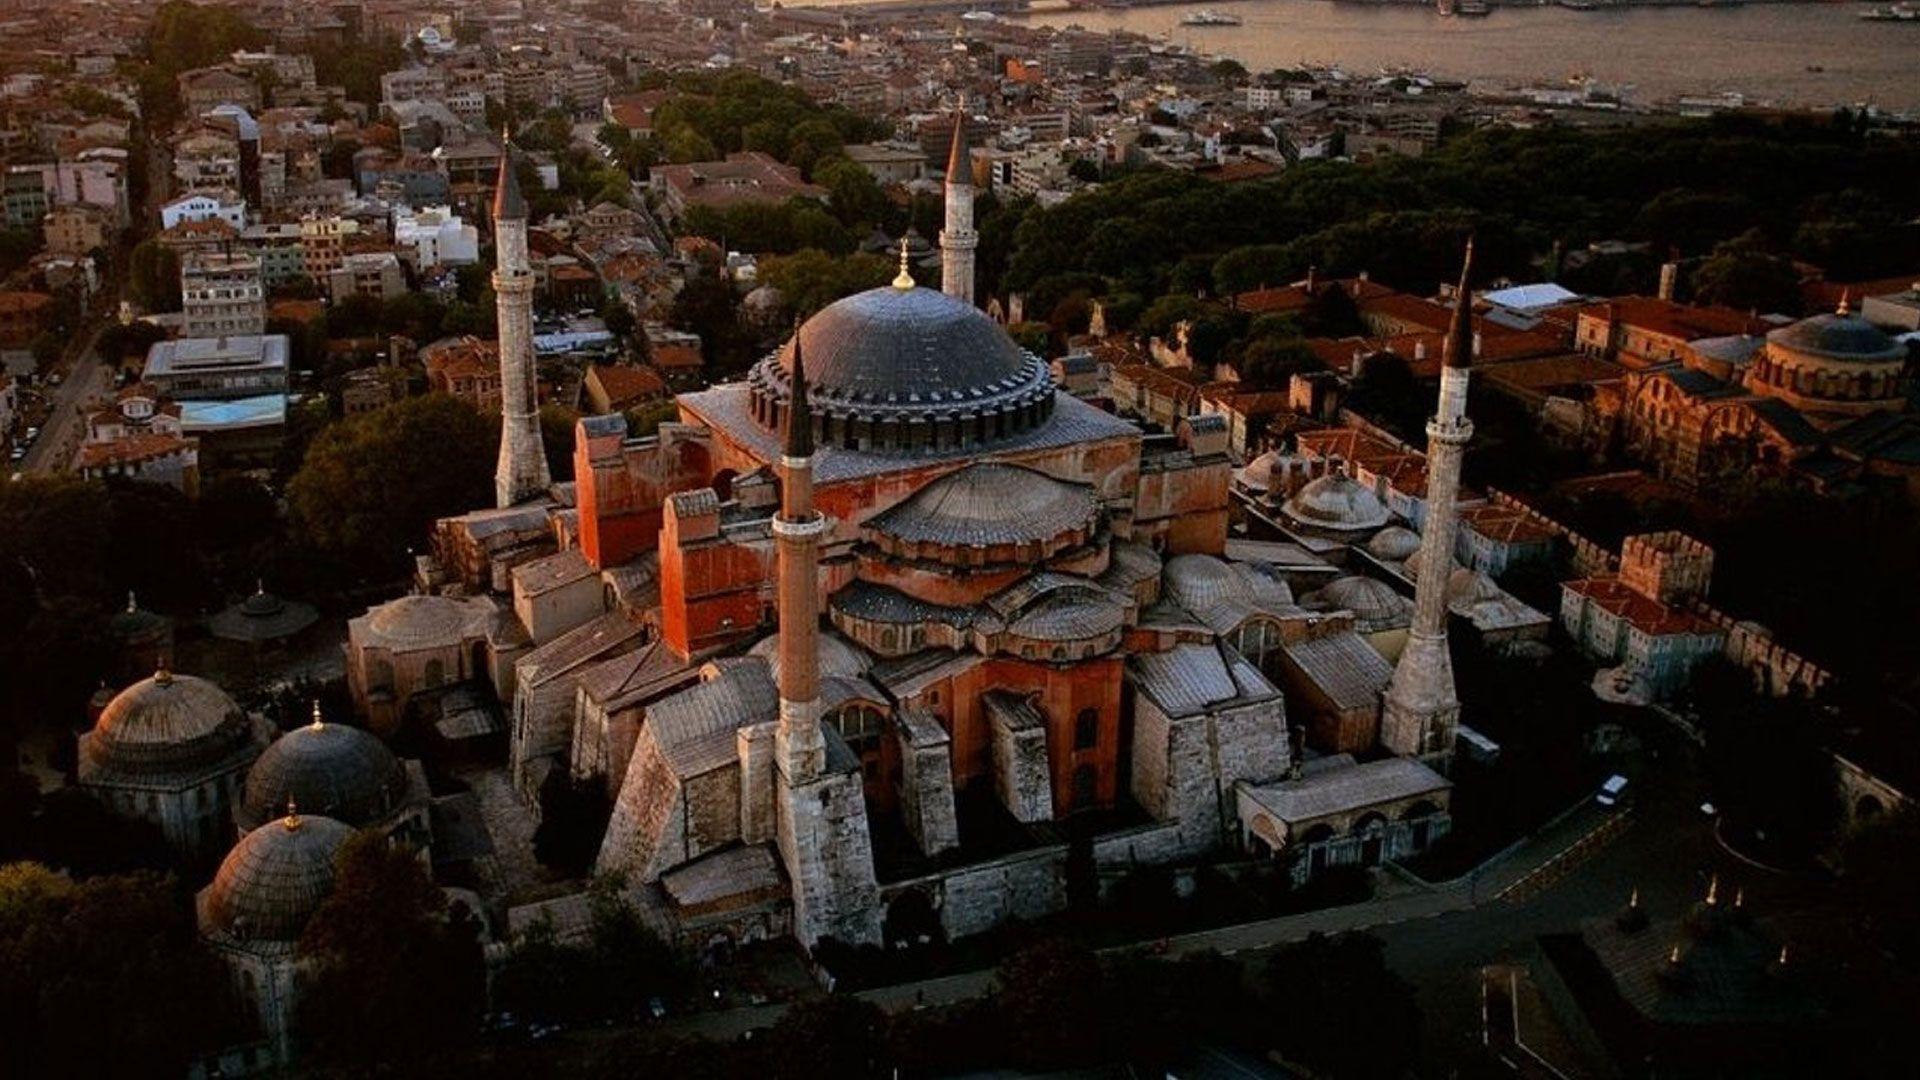 Hd Wallpaper Hagia Sophia Istanbul Turkey 1600 X 1200 614 Kb Jpeg